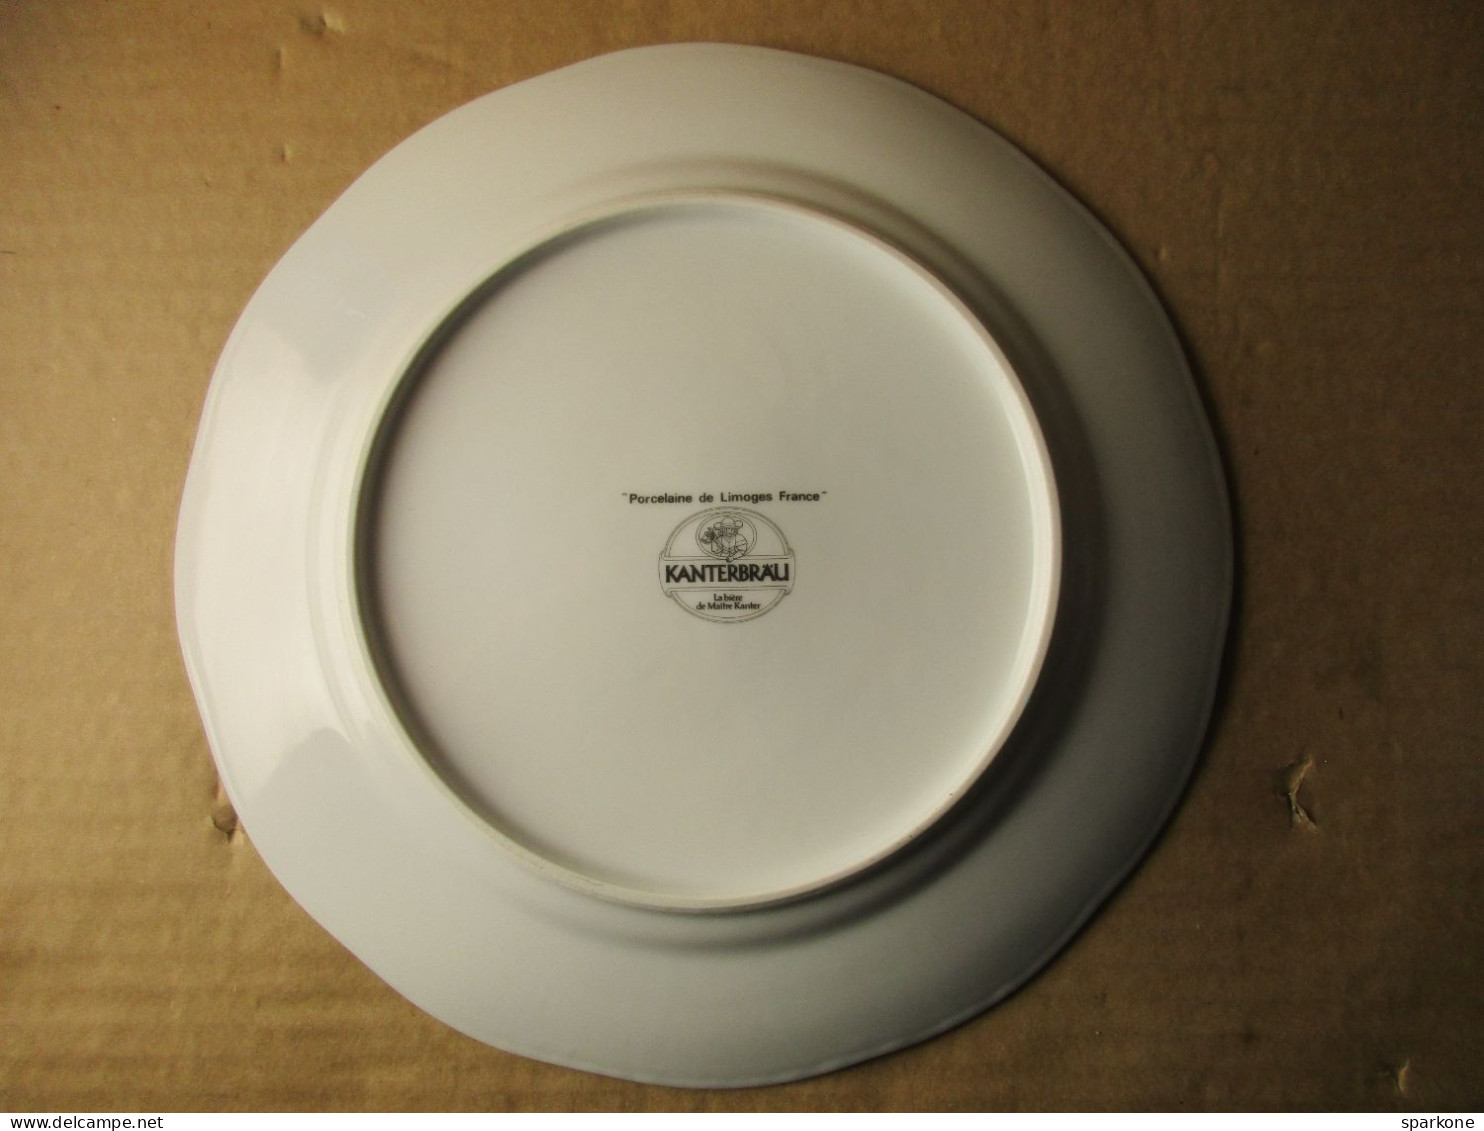 Assiette Plate Animées - Le Kugelhof Du Dimanche - Porcelaine De Limoges France - Kanterbrau - La Bière De Maître Kanter - Plates